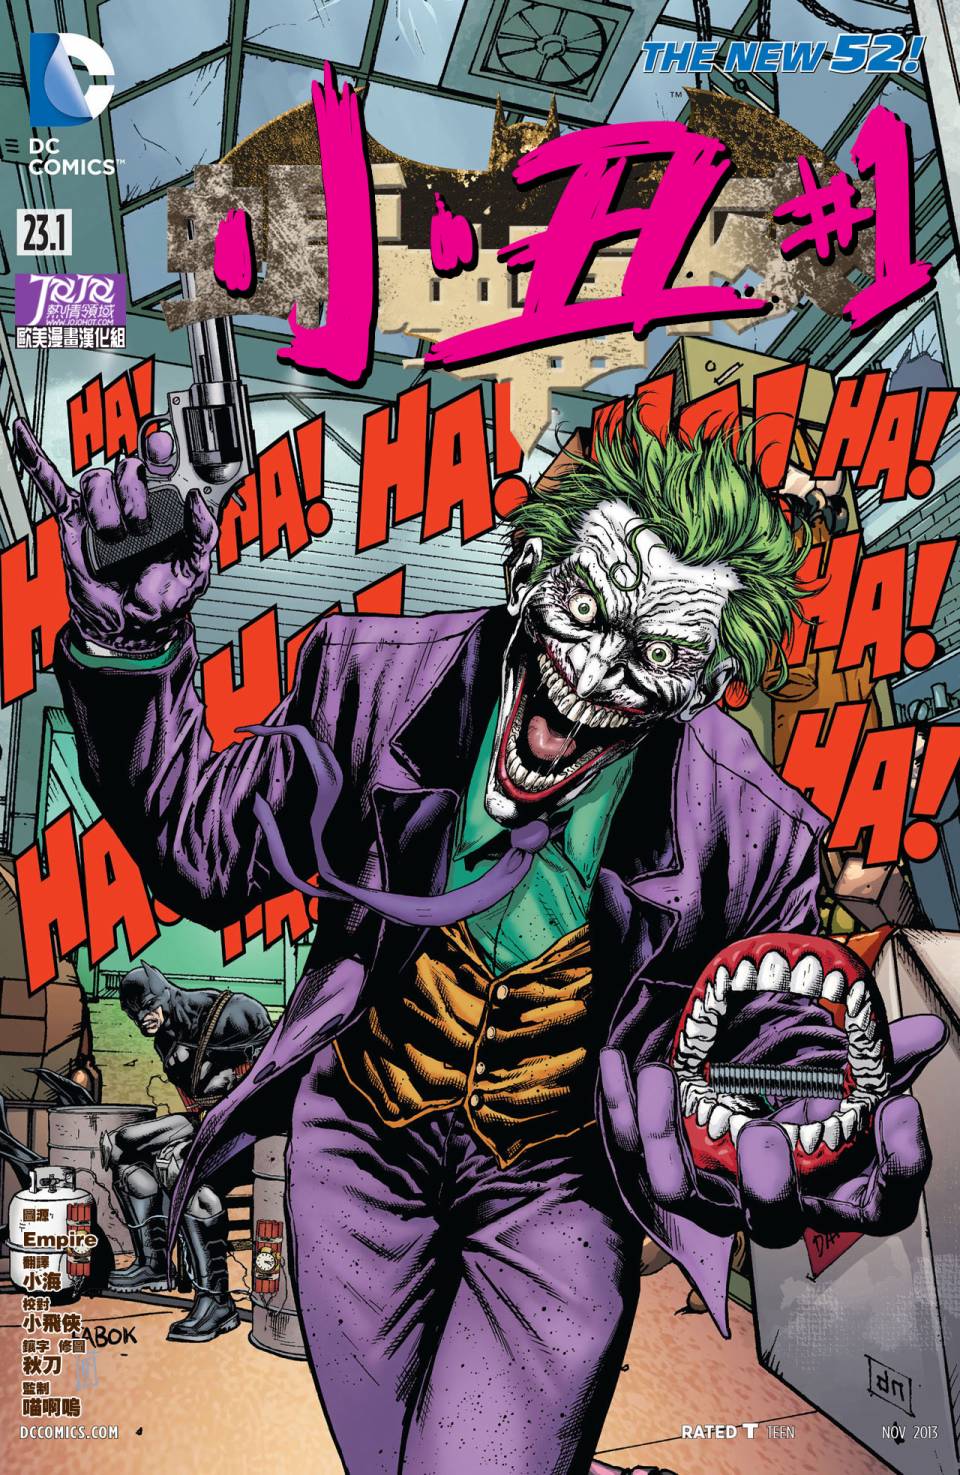 新52蝙蝠俠 第23 1卷小丑 1 漫畫線上看 動漫戲說 Acgn Cc